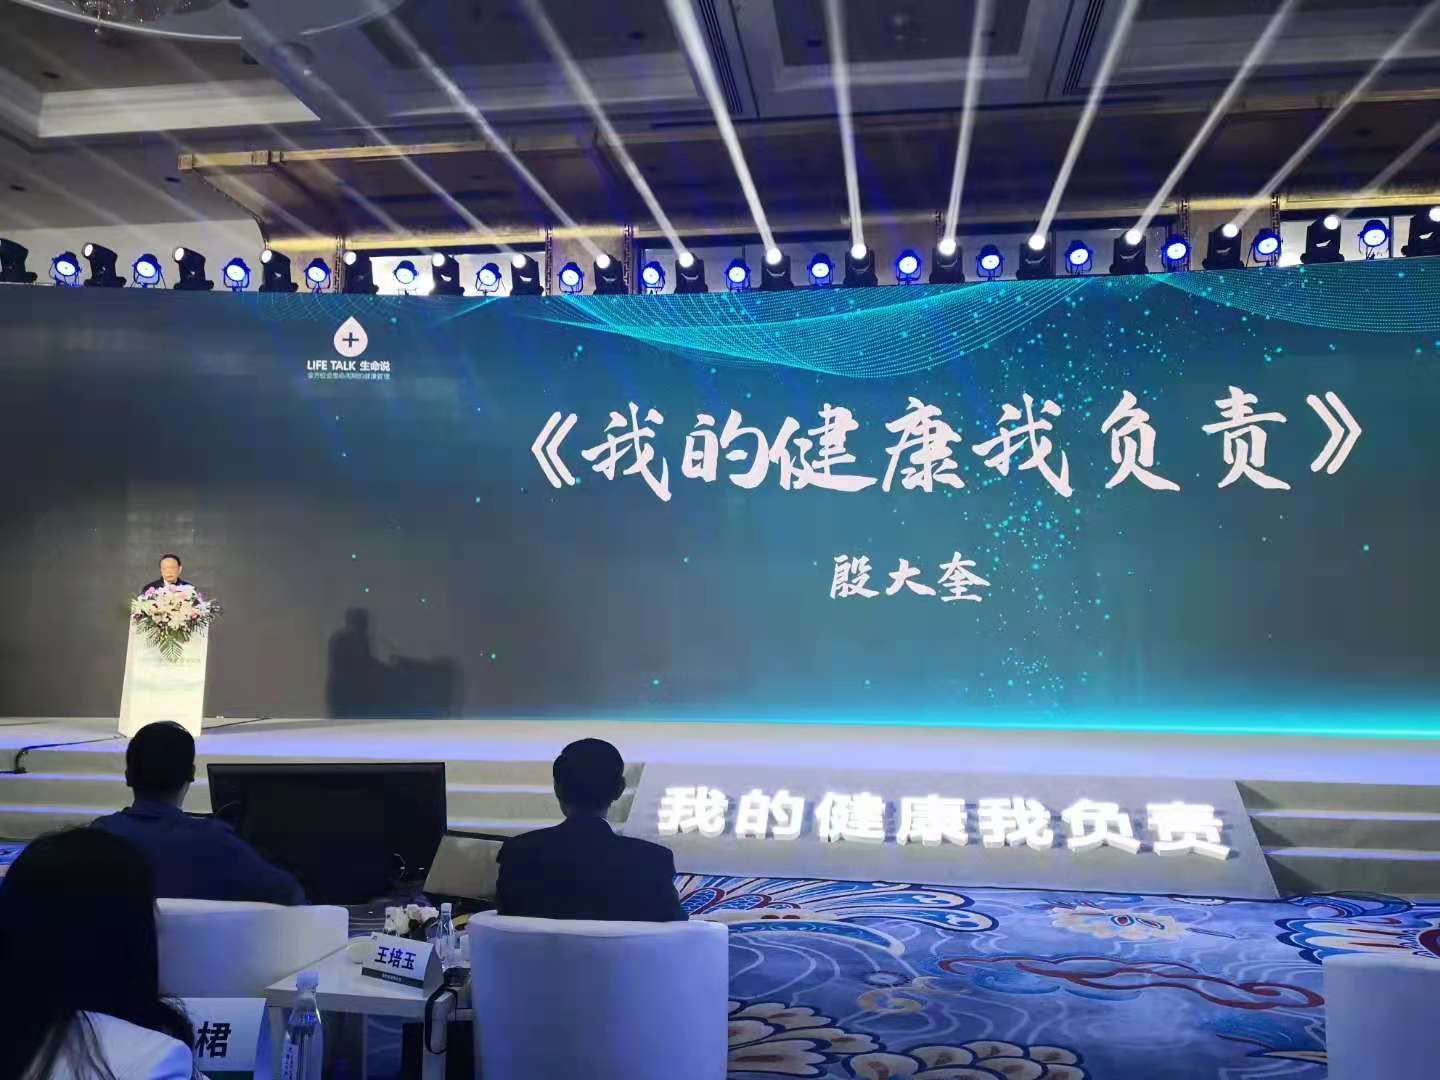 5月16日殷大奎出席”生命说三周年庆典暨第五届健康管理高峰论坛“发表演讲